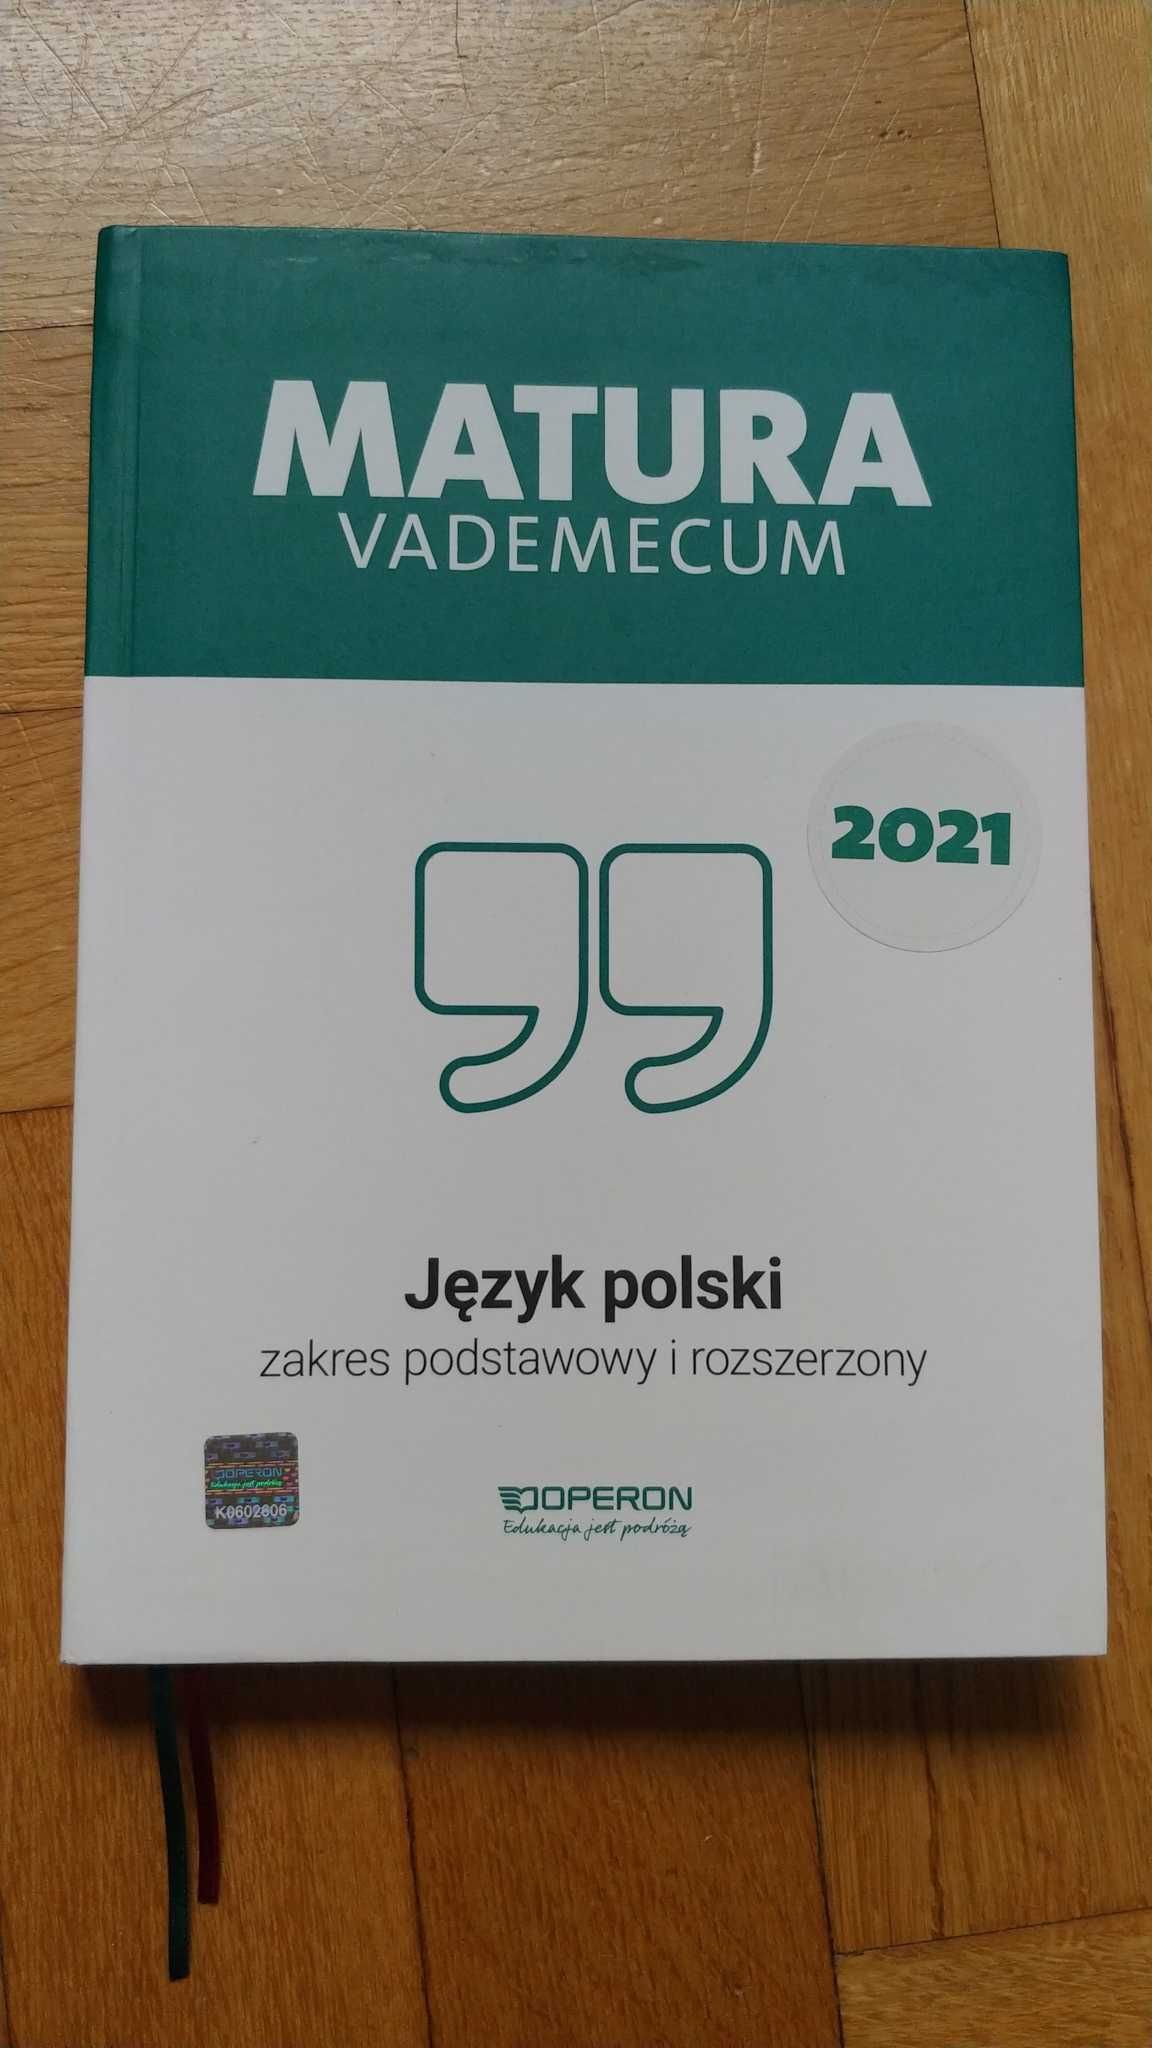 Matura Vademecum Język Polski 2021 Operon nieużywana